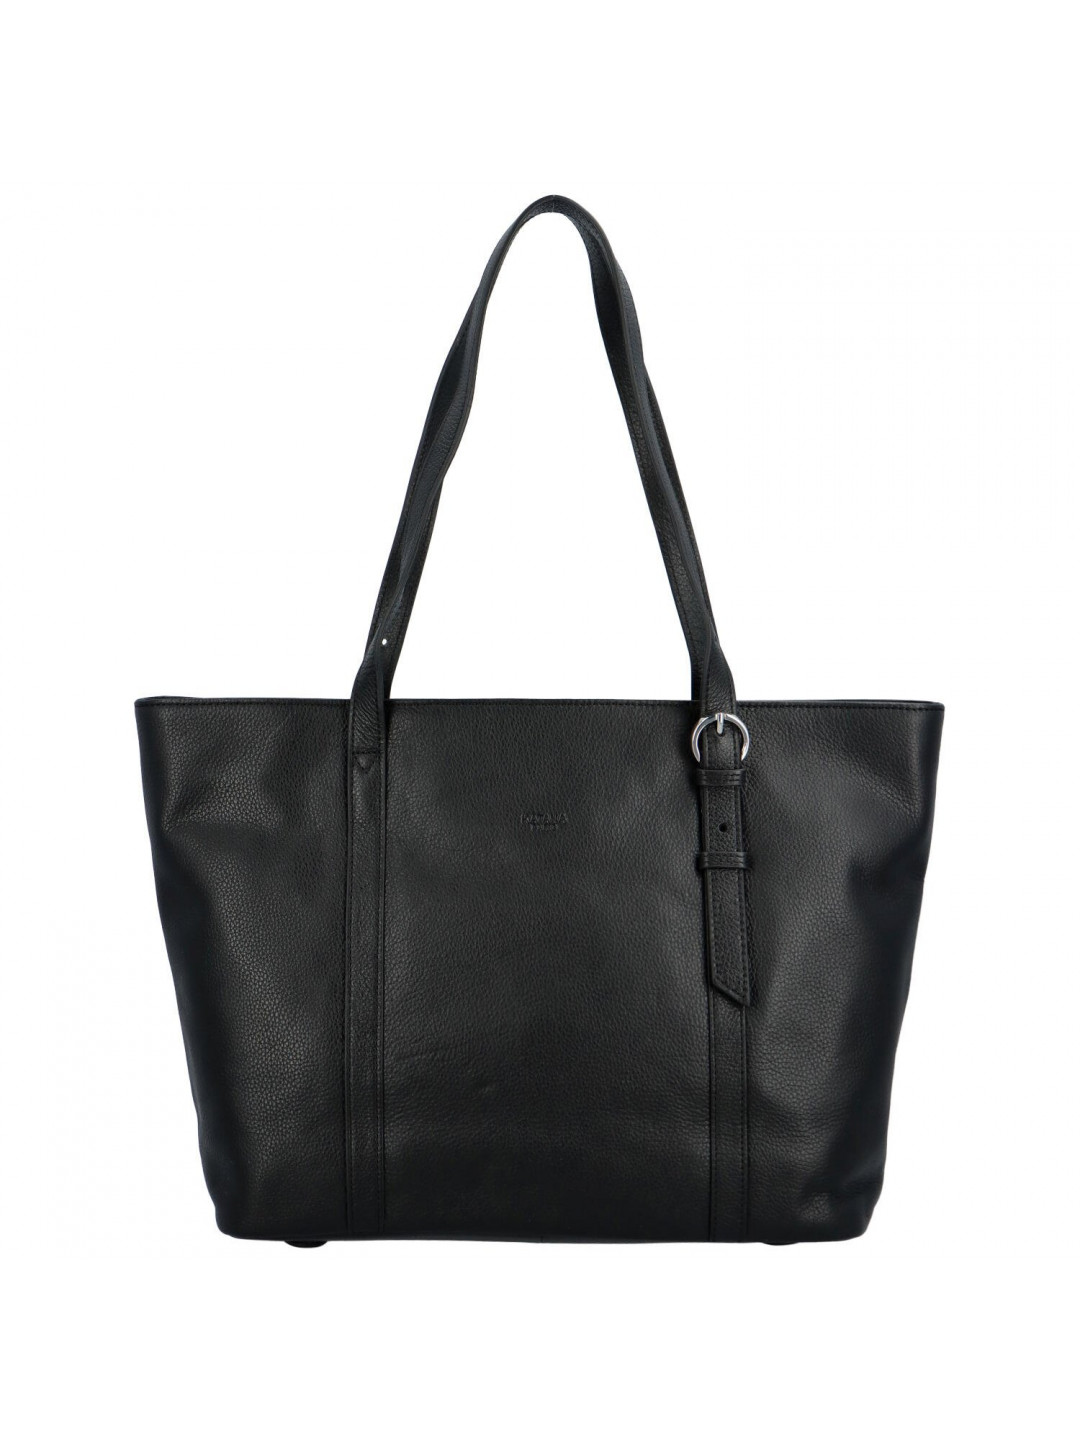 Luxusní dámská kožená kabelka Katana Siva černá